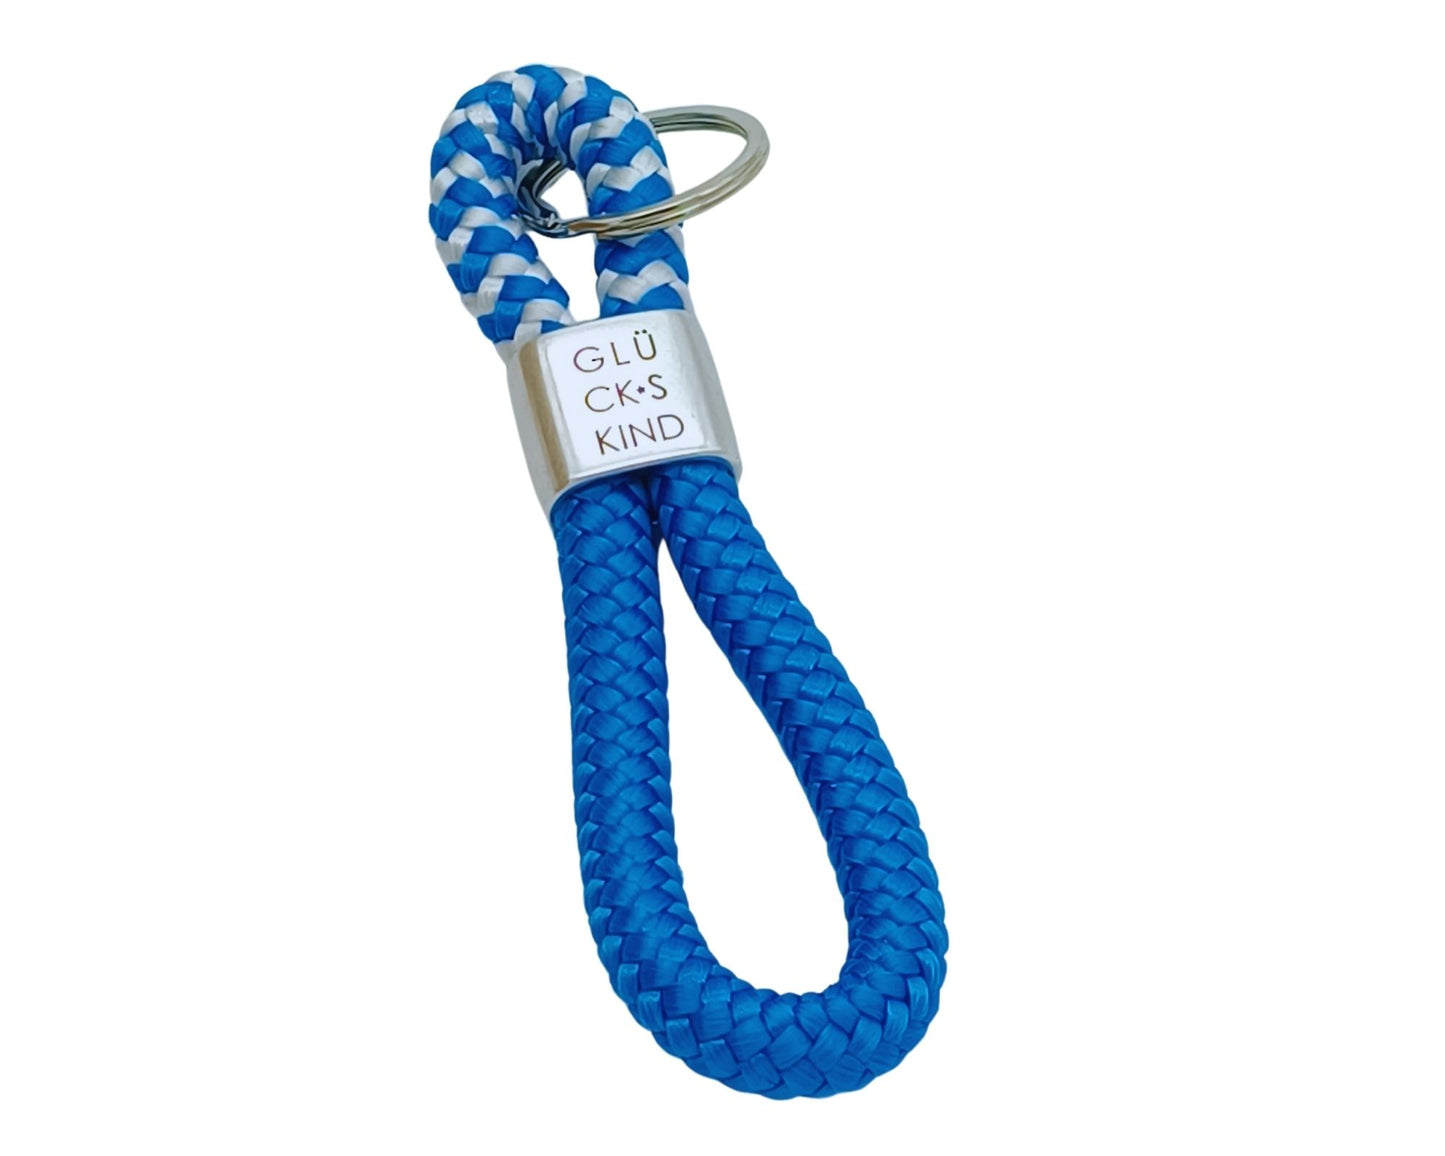 Segelseil Schlüsselanhänger, blau / blau weiß, Glückskind